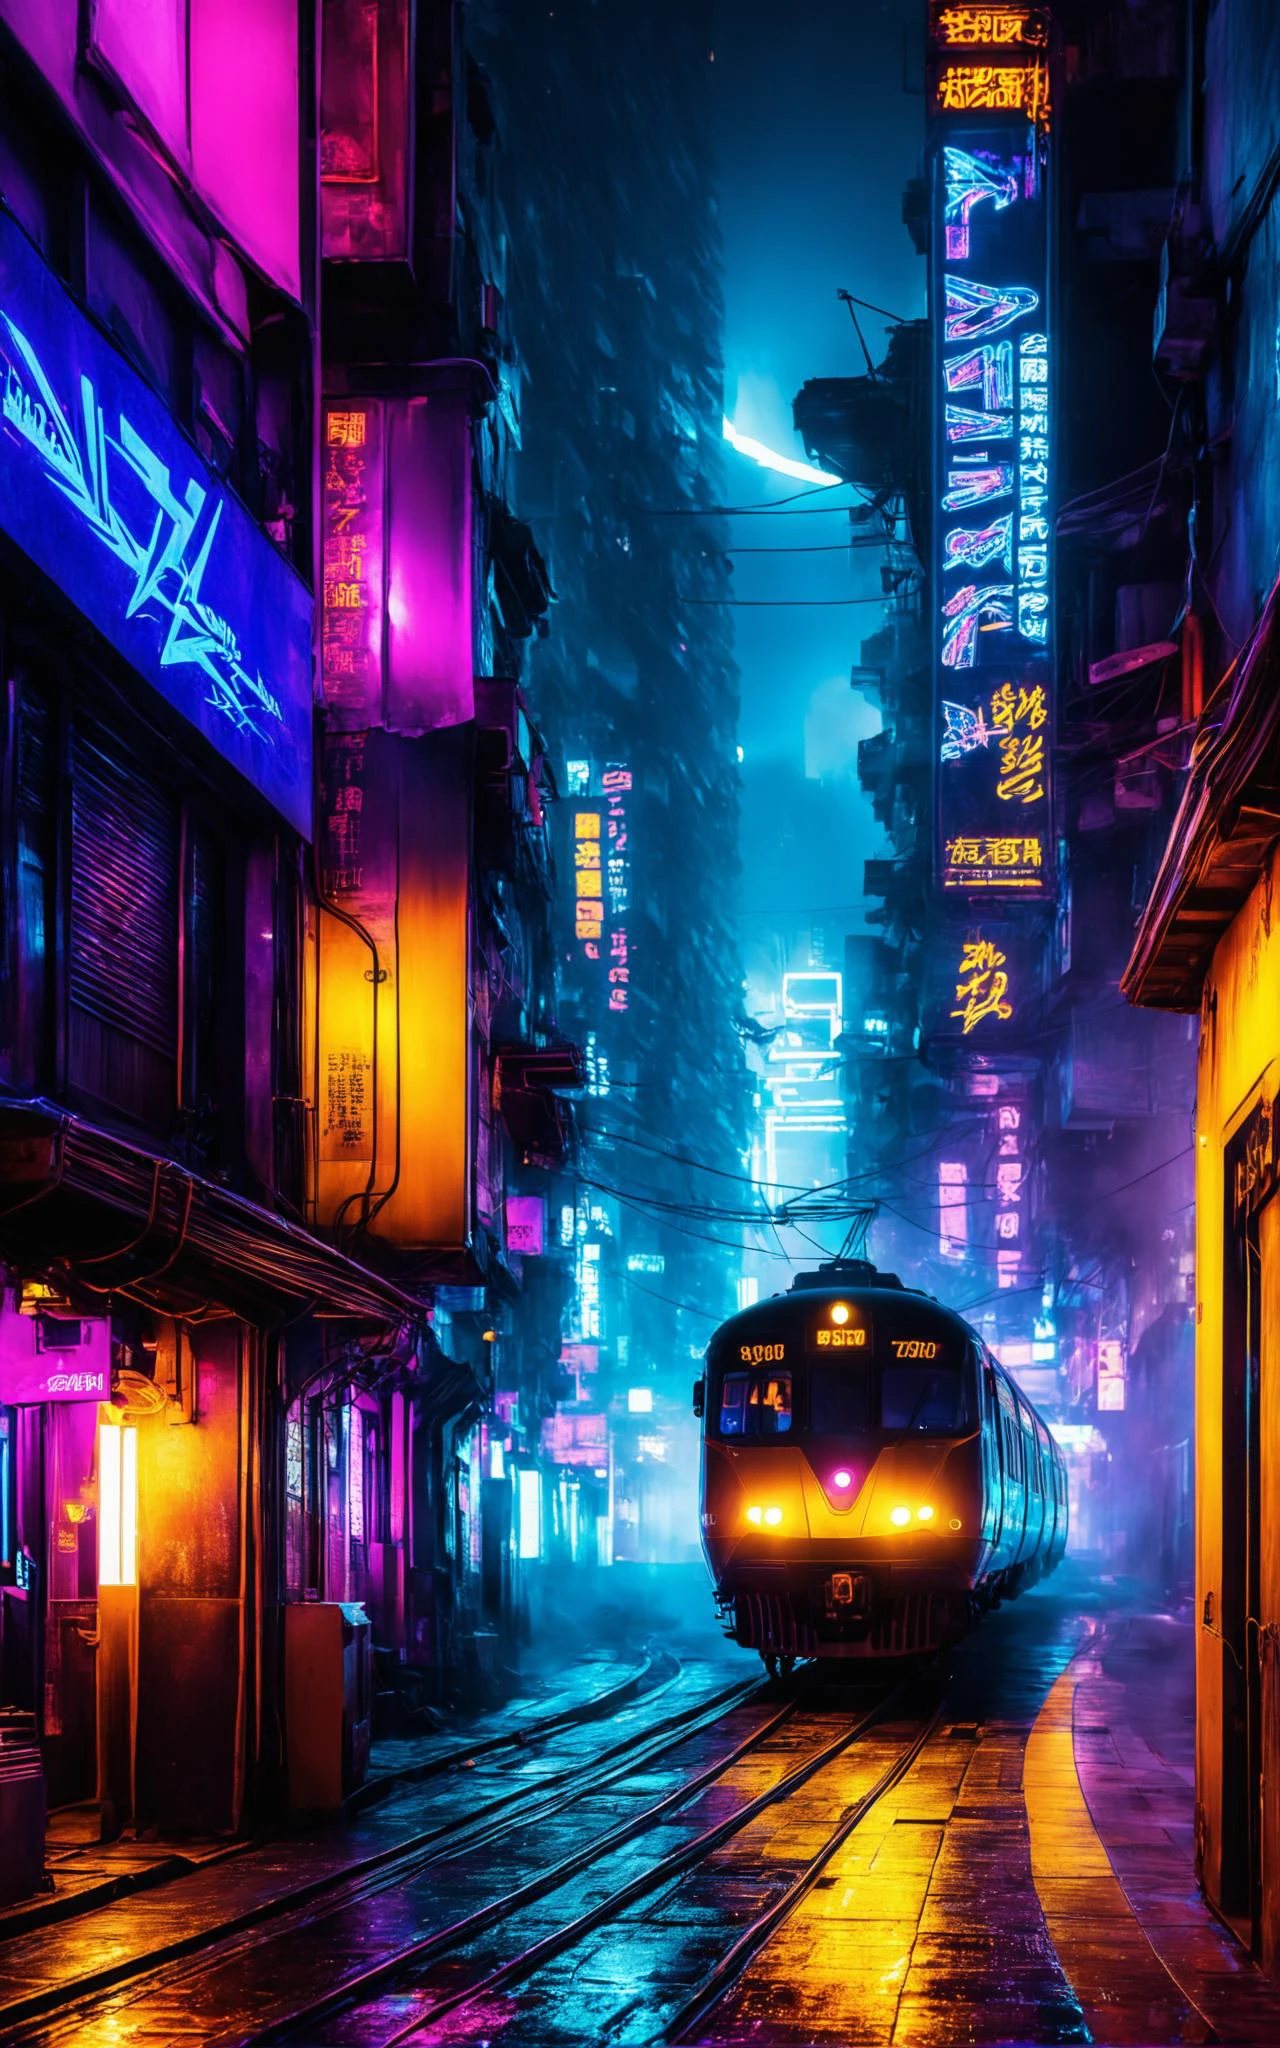 a science-fiction futuristic concept (train à vapeur:1.2), courbé et aérodynamique, Kowloon walled city narrow winding ruelle, vitesse de la lumière, éclair, forte pluie, piste de mouvement, une étoile brillante(Soleil) En arrière-plan, (lignes de vitesse:1.1), (Flou de mouvement:1.1), contraste élevé, concentration profonde, Tron, style par Ridley Scott, Cyberpunk 2077, Coureur de lame, Brouillard, brume, Effets visuels épiques, arc foudre, underbriller, interstellaire, couler, détaillé, science-fiction, extremely détaillé textures, explosion d&#39;étoiles, couleurs sombres et vibrantes, art cosmique, étoiles en arrière-plan, phares, Scène cinématographique, reflet, étalonnage des couleurs cinématographique, scène de filme, Dieu rayons, briller, art of Doug Chiang and John Park brillerneon, Fuji Cinestill, fuite de lumière, brillering, des étincelles, foudre, ultra détaillé  dramatic lighting  ultraviolet blacklight reactive paint, les lignes électriques, podiums, ruelle  